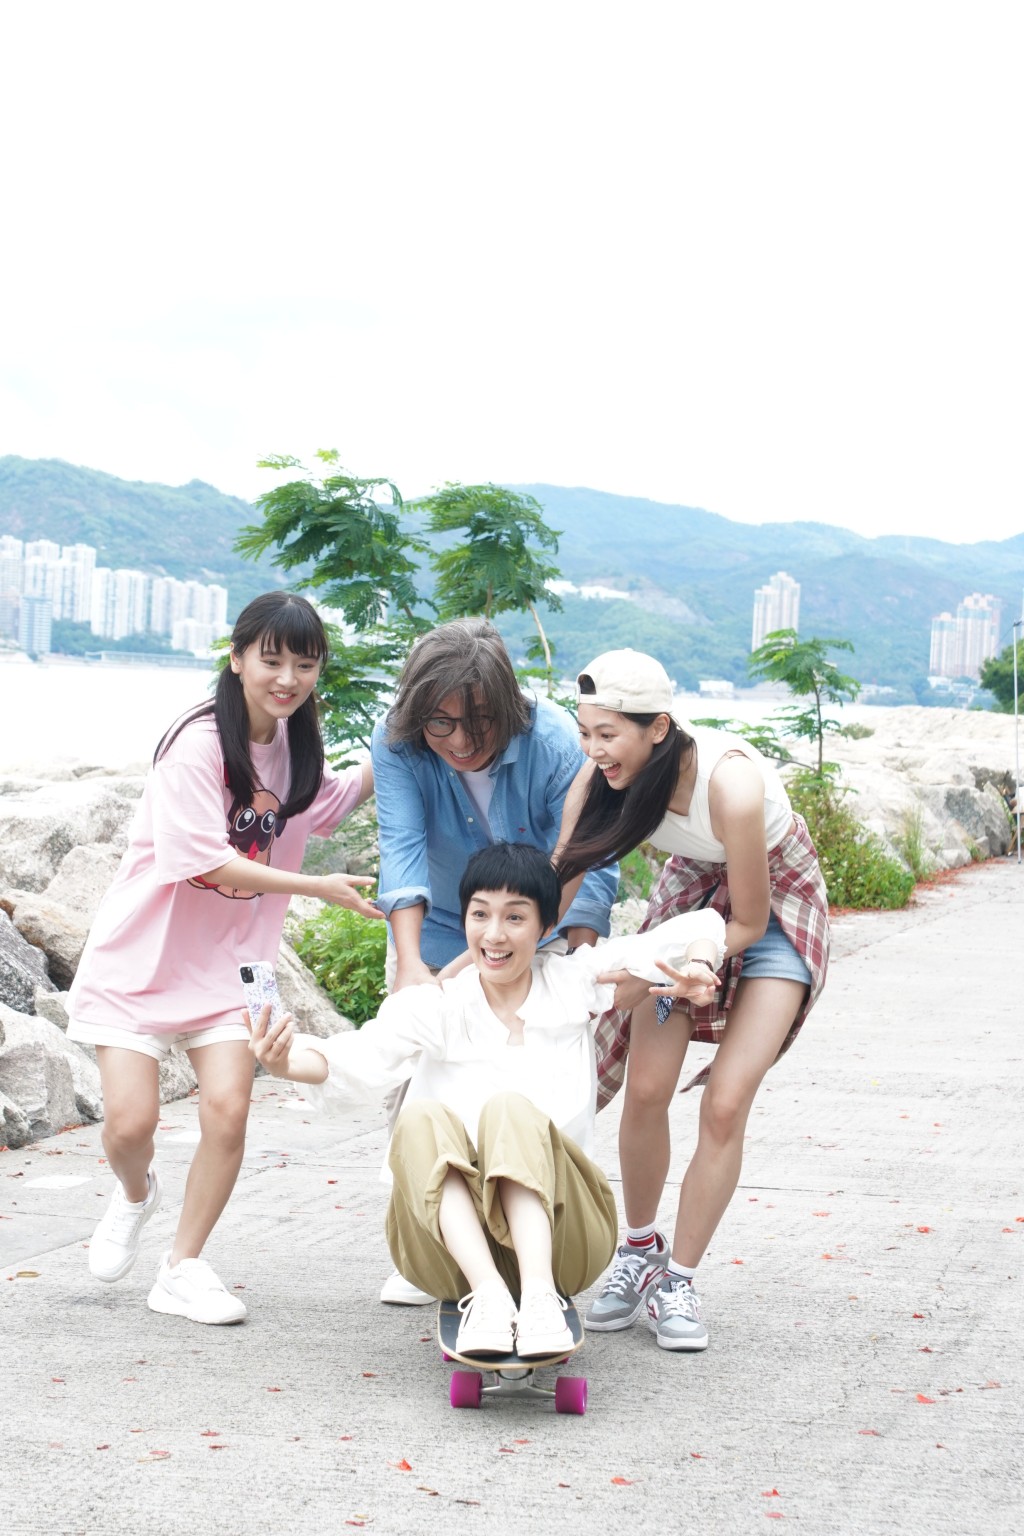 郭柏妍在《下流上車族》飾演林敏驄和江美儀大女「芊芊」。